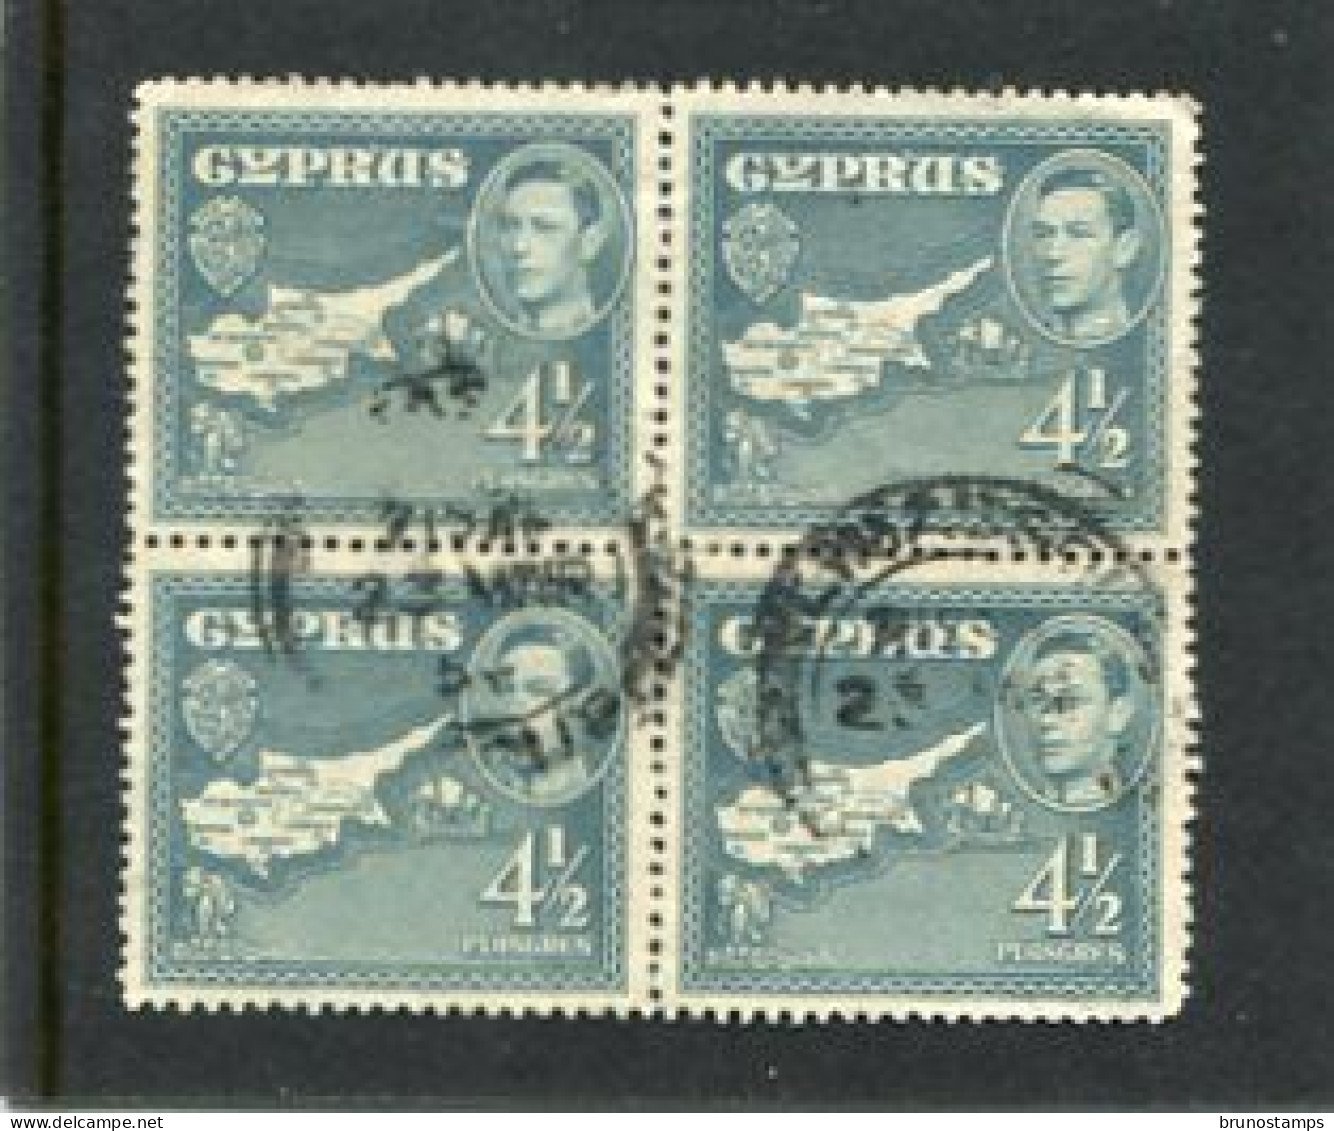 CYPRUS - 1938  GEORGE VI  4 1/2 Pi  BLOCK OF 4 FINE USED - Cyprus (...-1960)